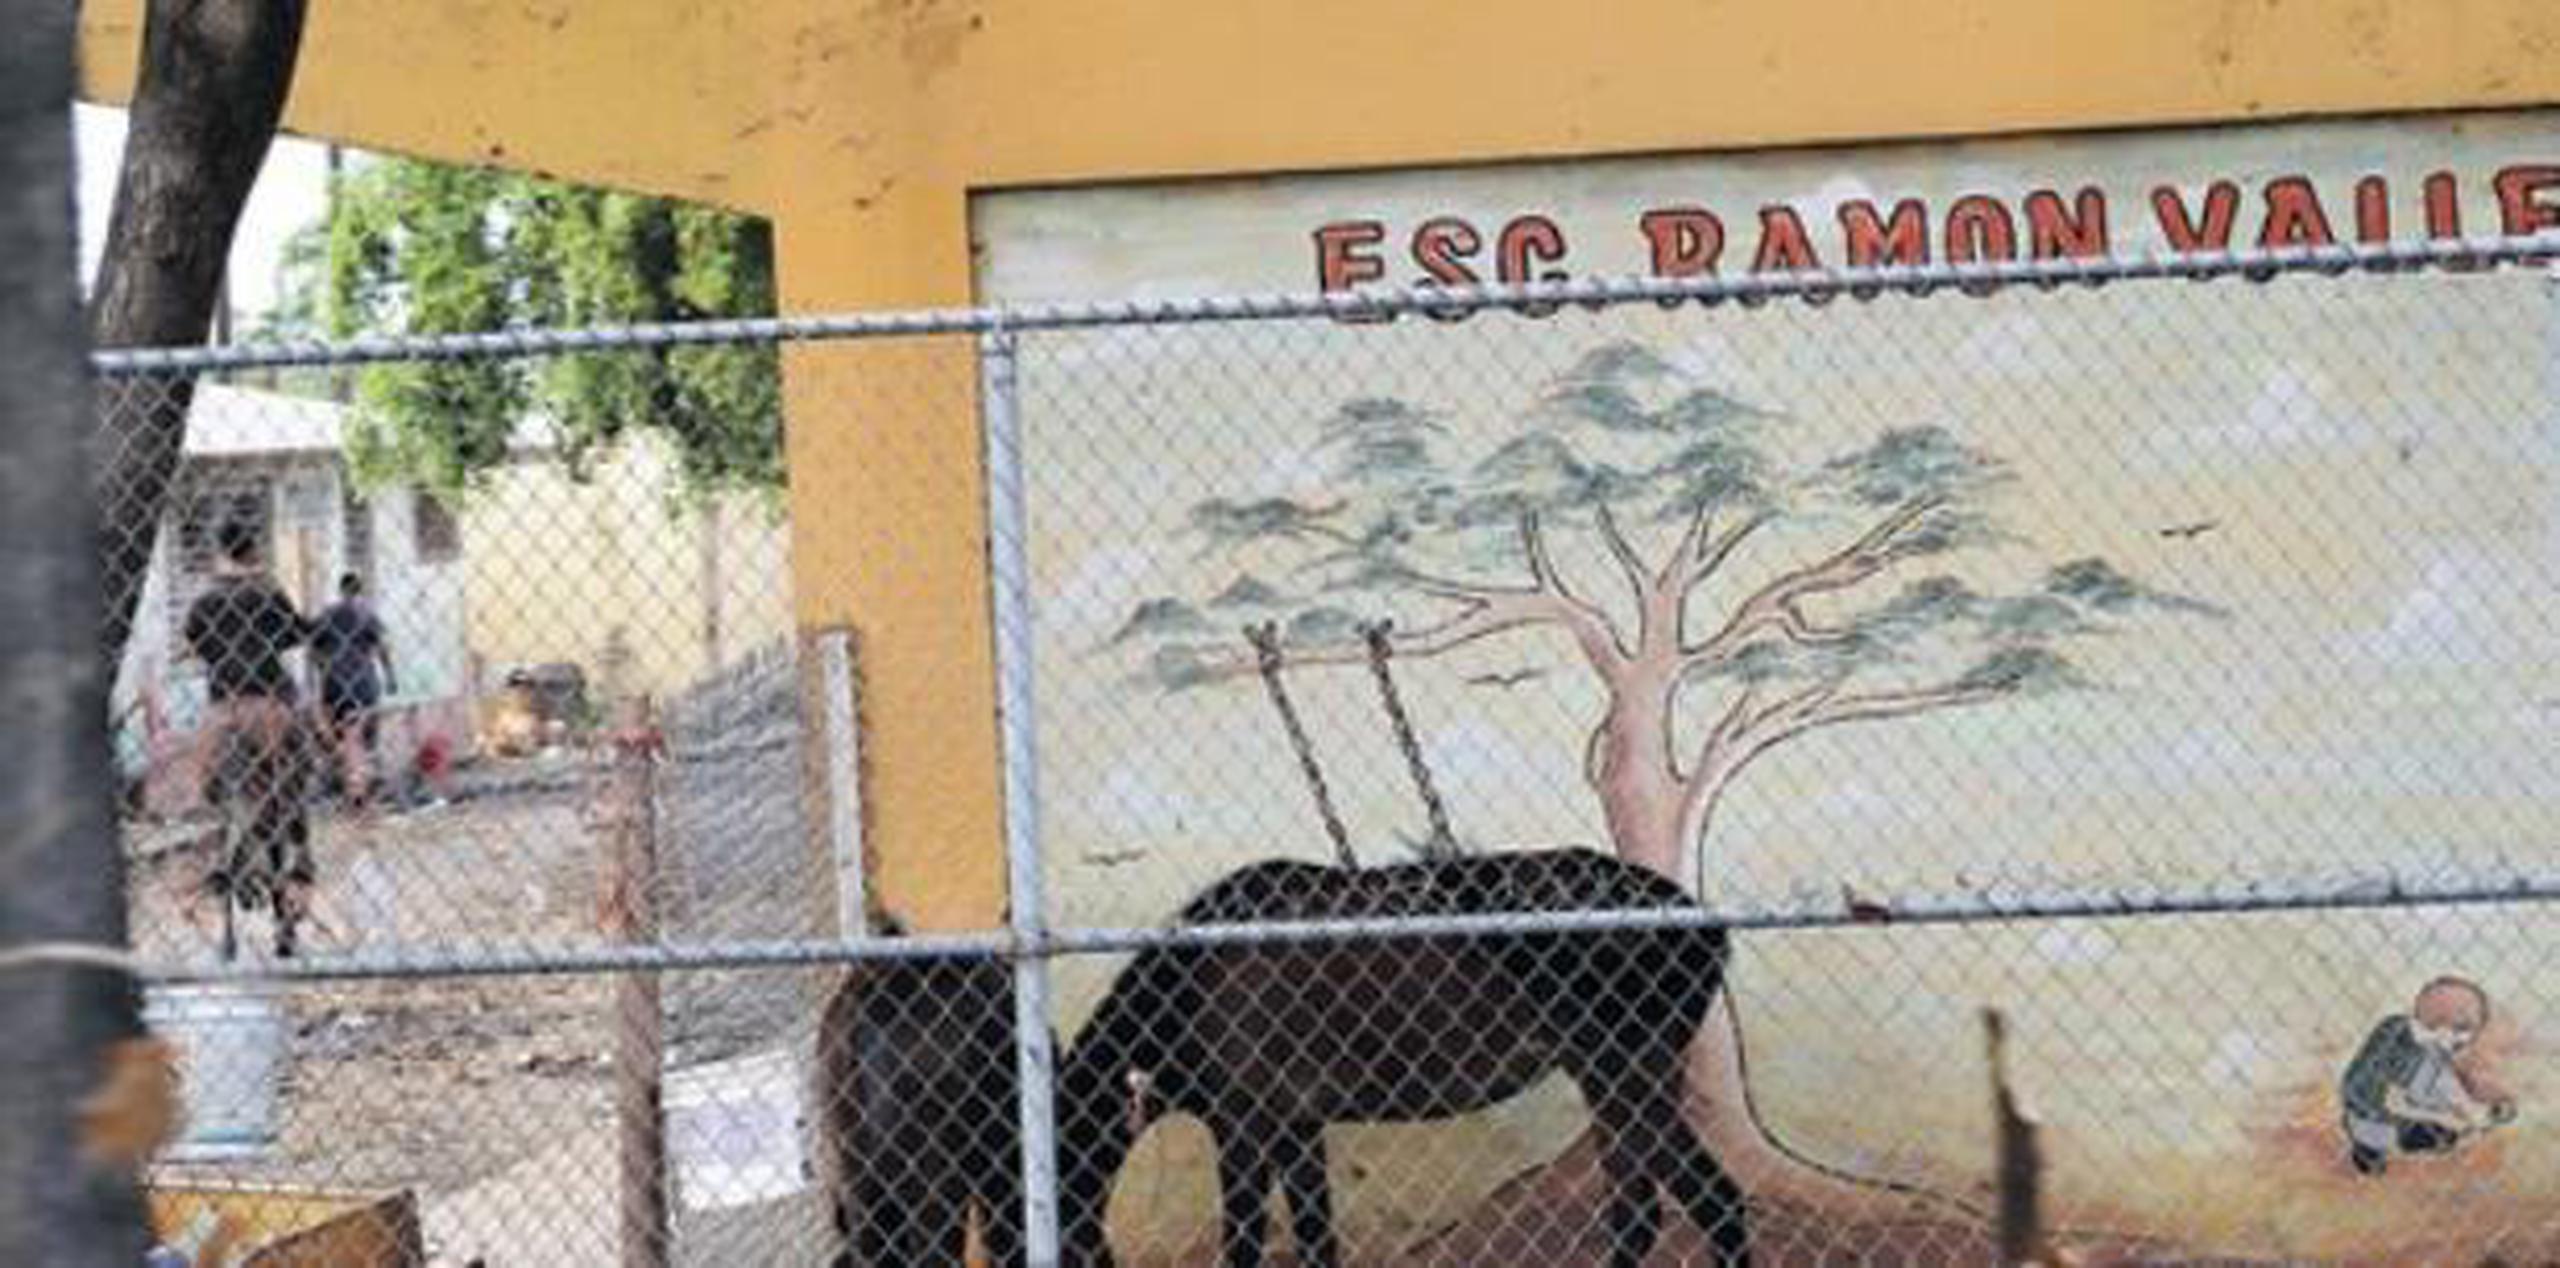 Al menos 17 escuelas han sido cerradas en el área de Mayagüez en los pasados años. (Suministrada)